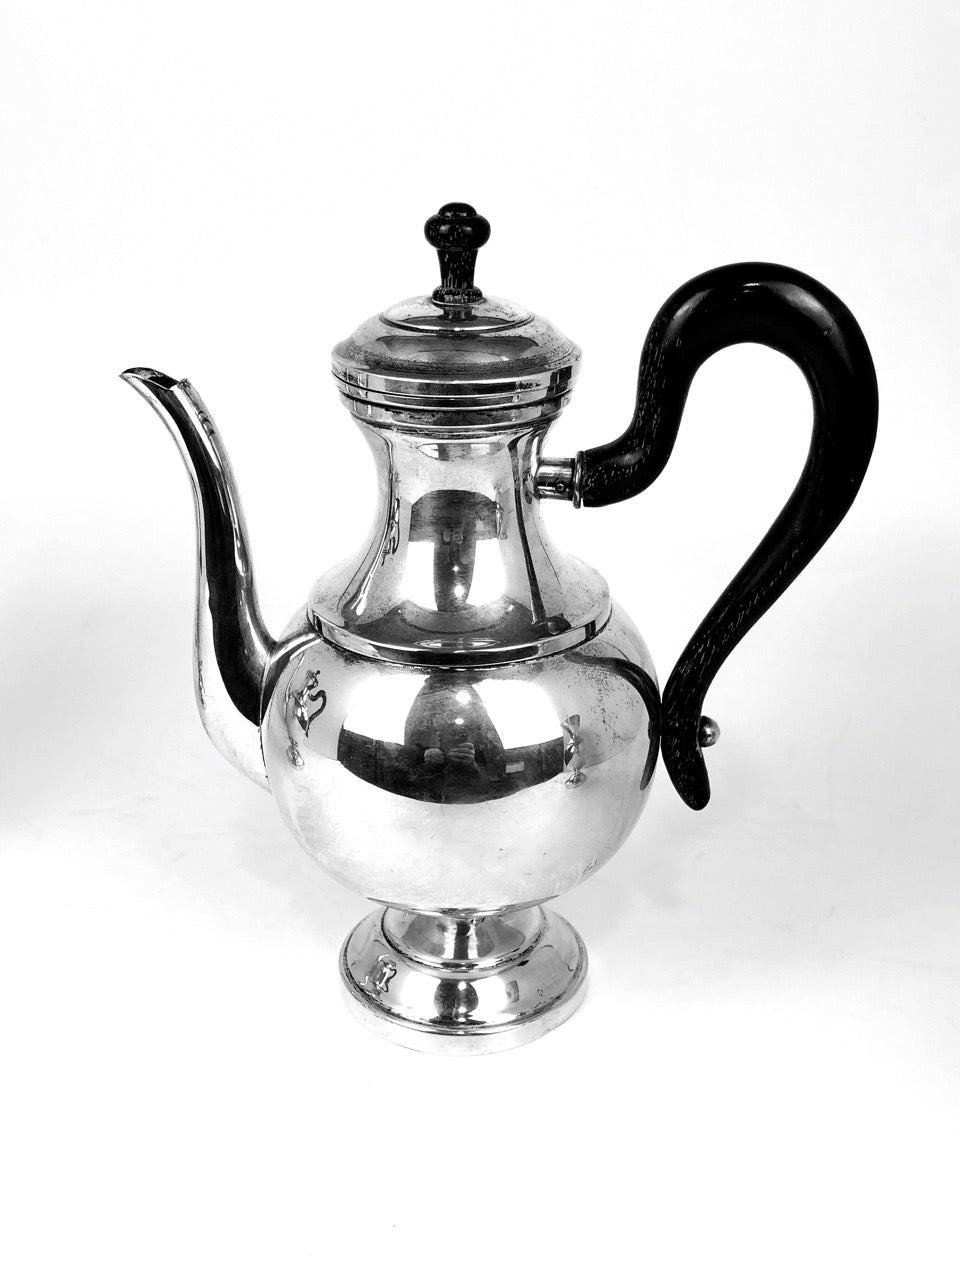 Tre pezzi in argento, teiera, caffettiera, lattiera, con manici in legno color nero.